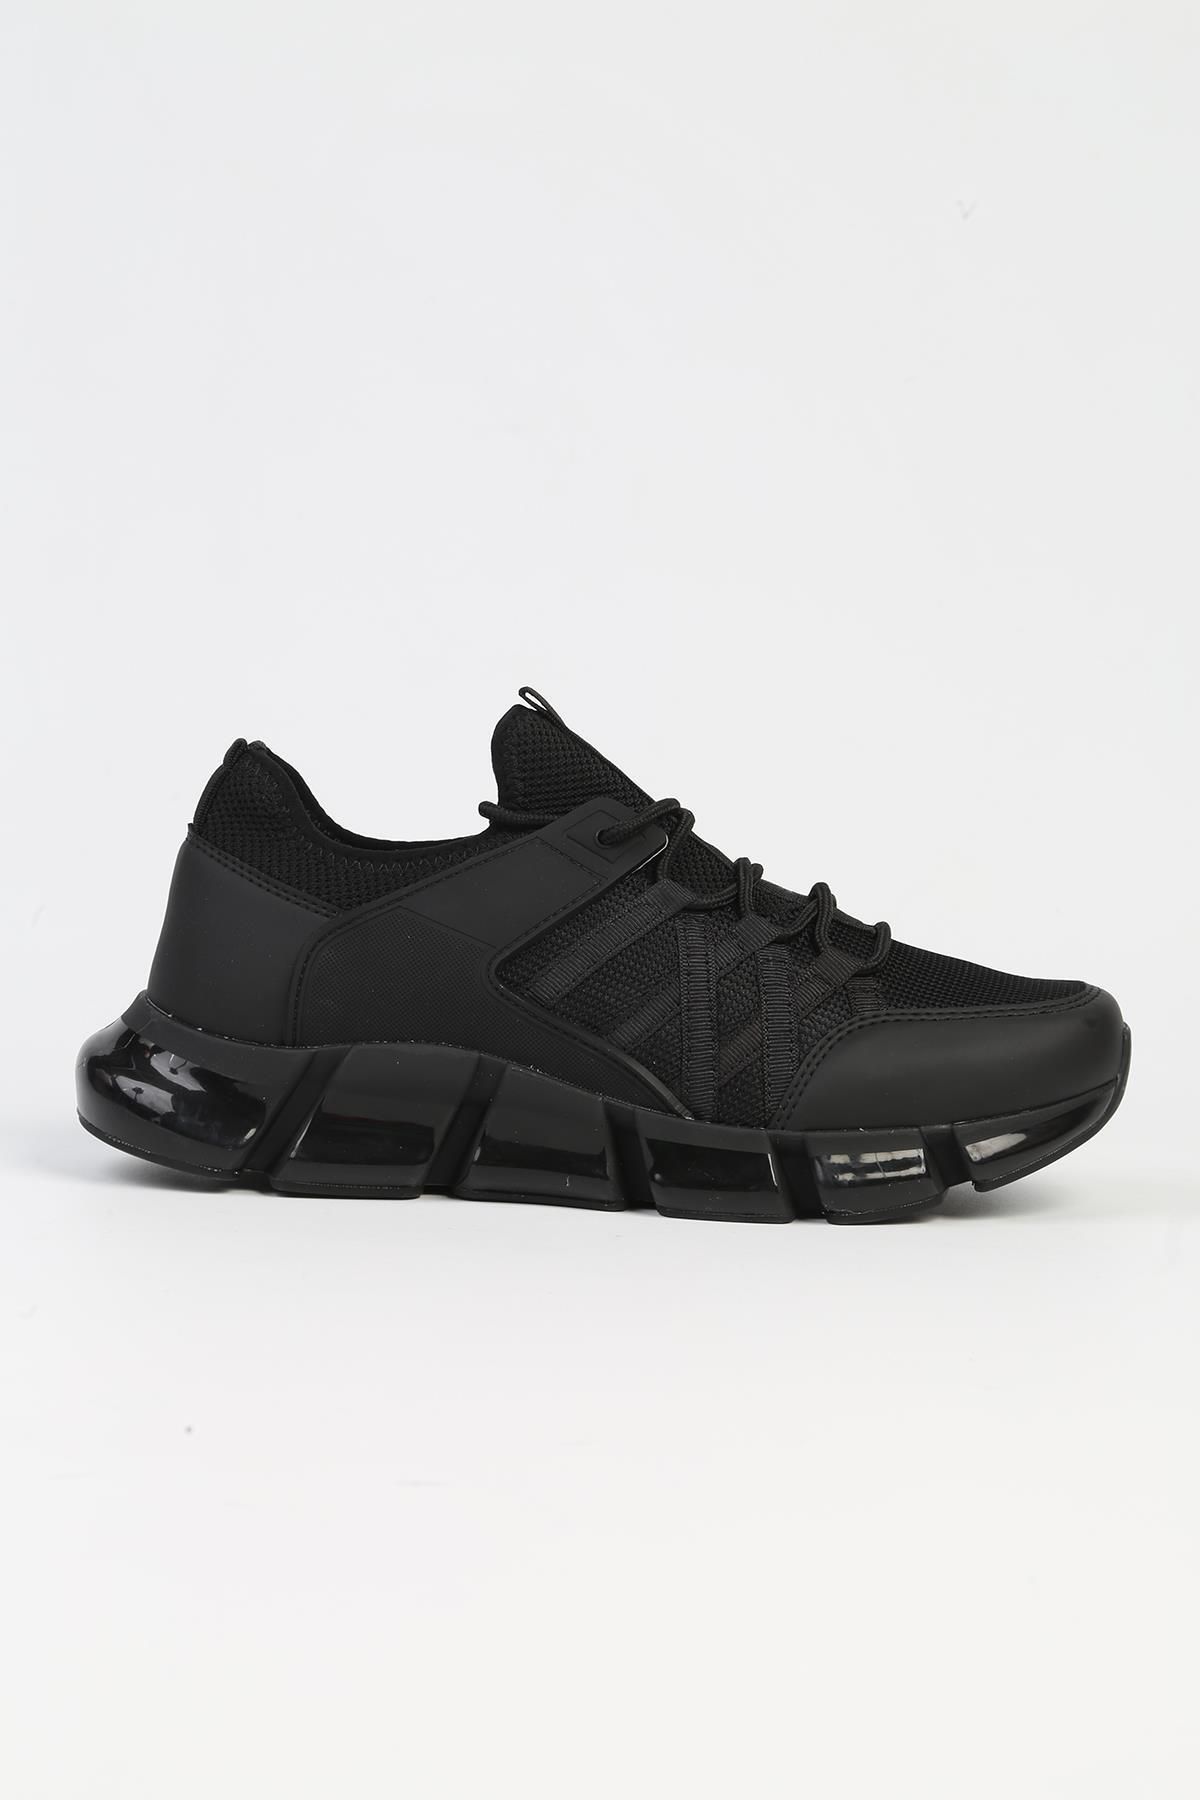 Pierre Cardin ® | PC-31419 - 34152 Siyah Gri - Erkek Spor Ayakkabı